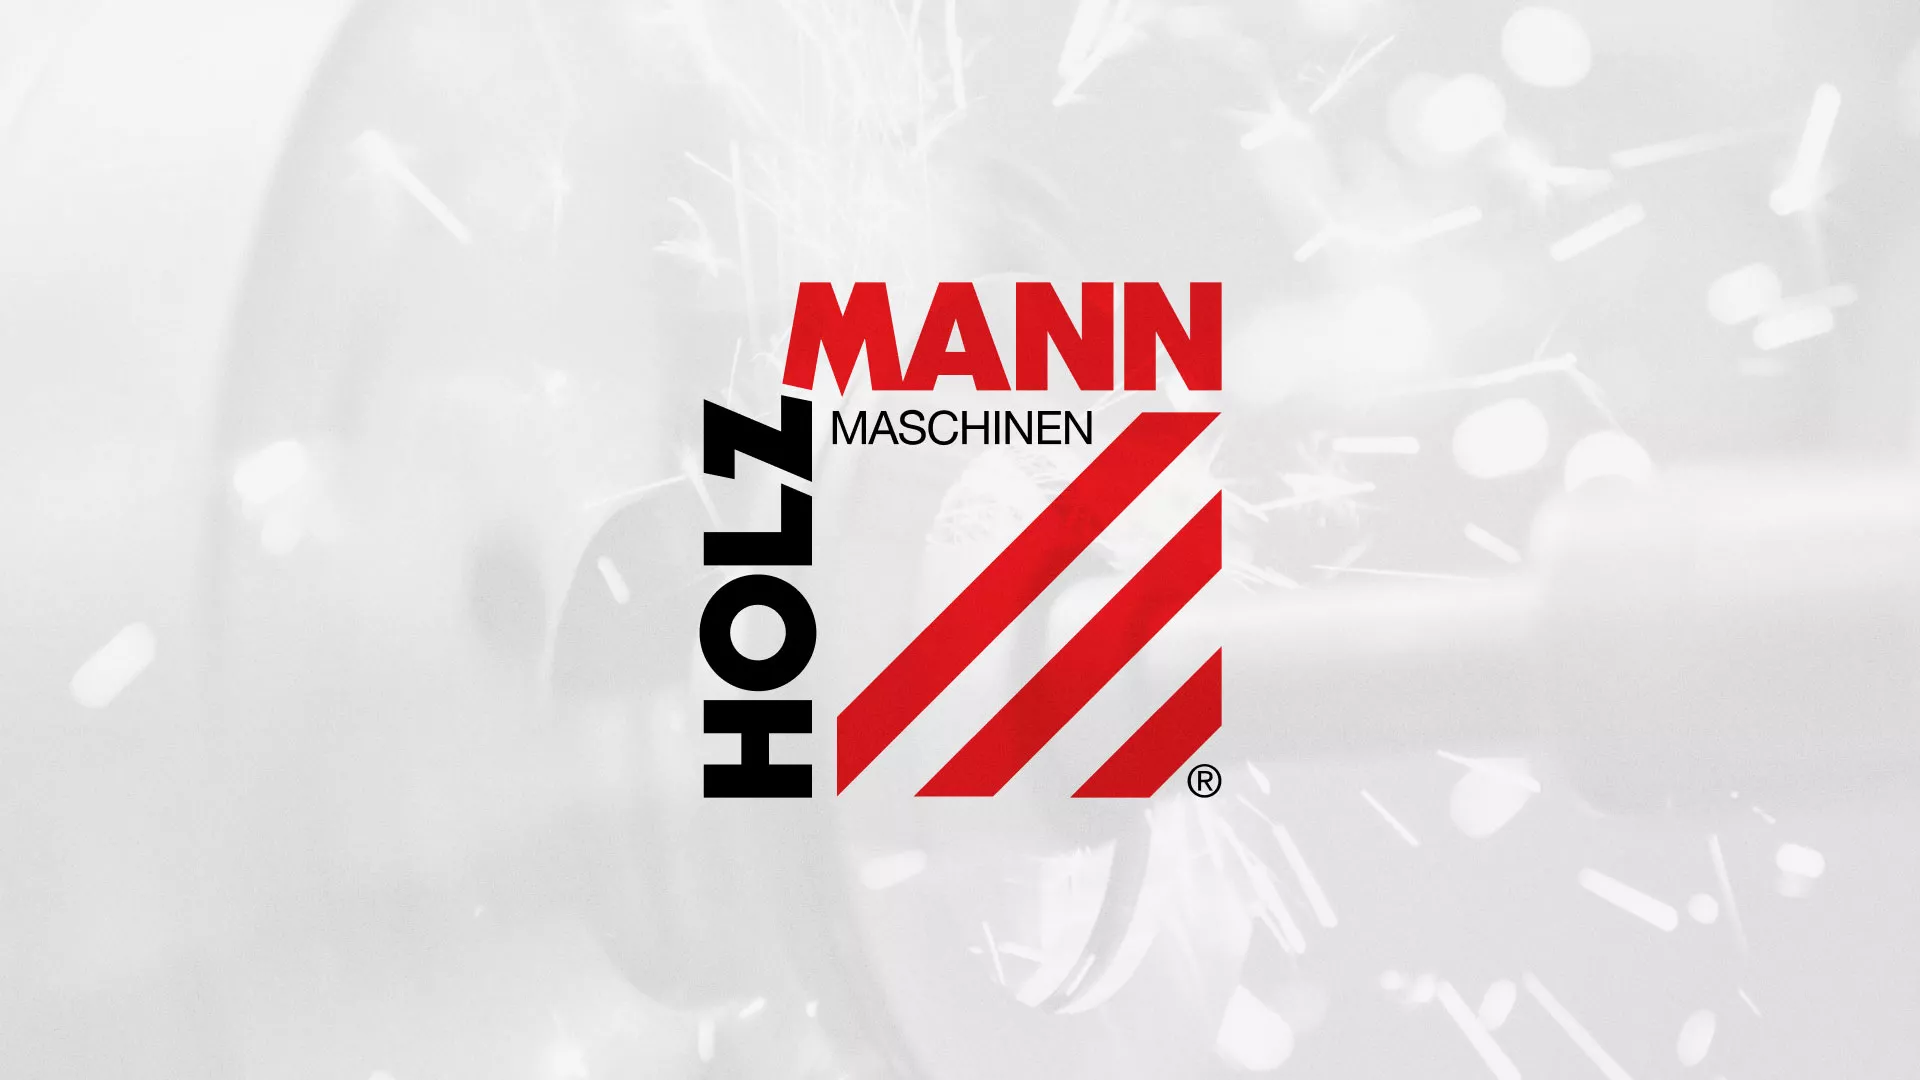 Создание сайта компании «HOLZMANN Maschinen GmbH» в Луховицах